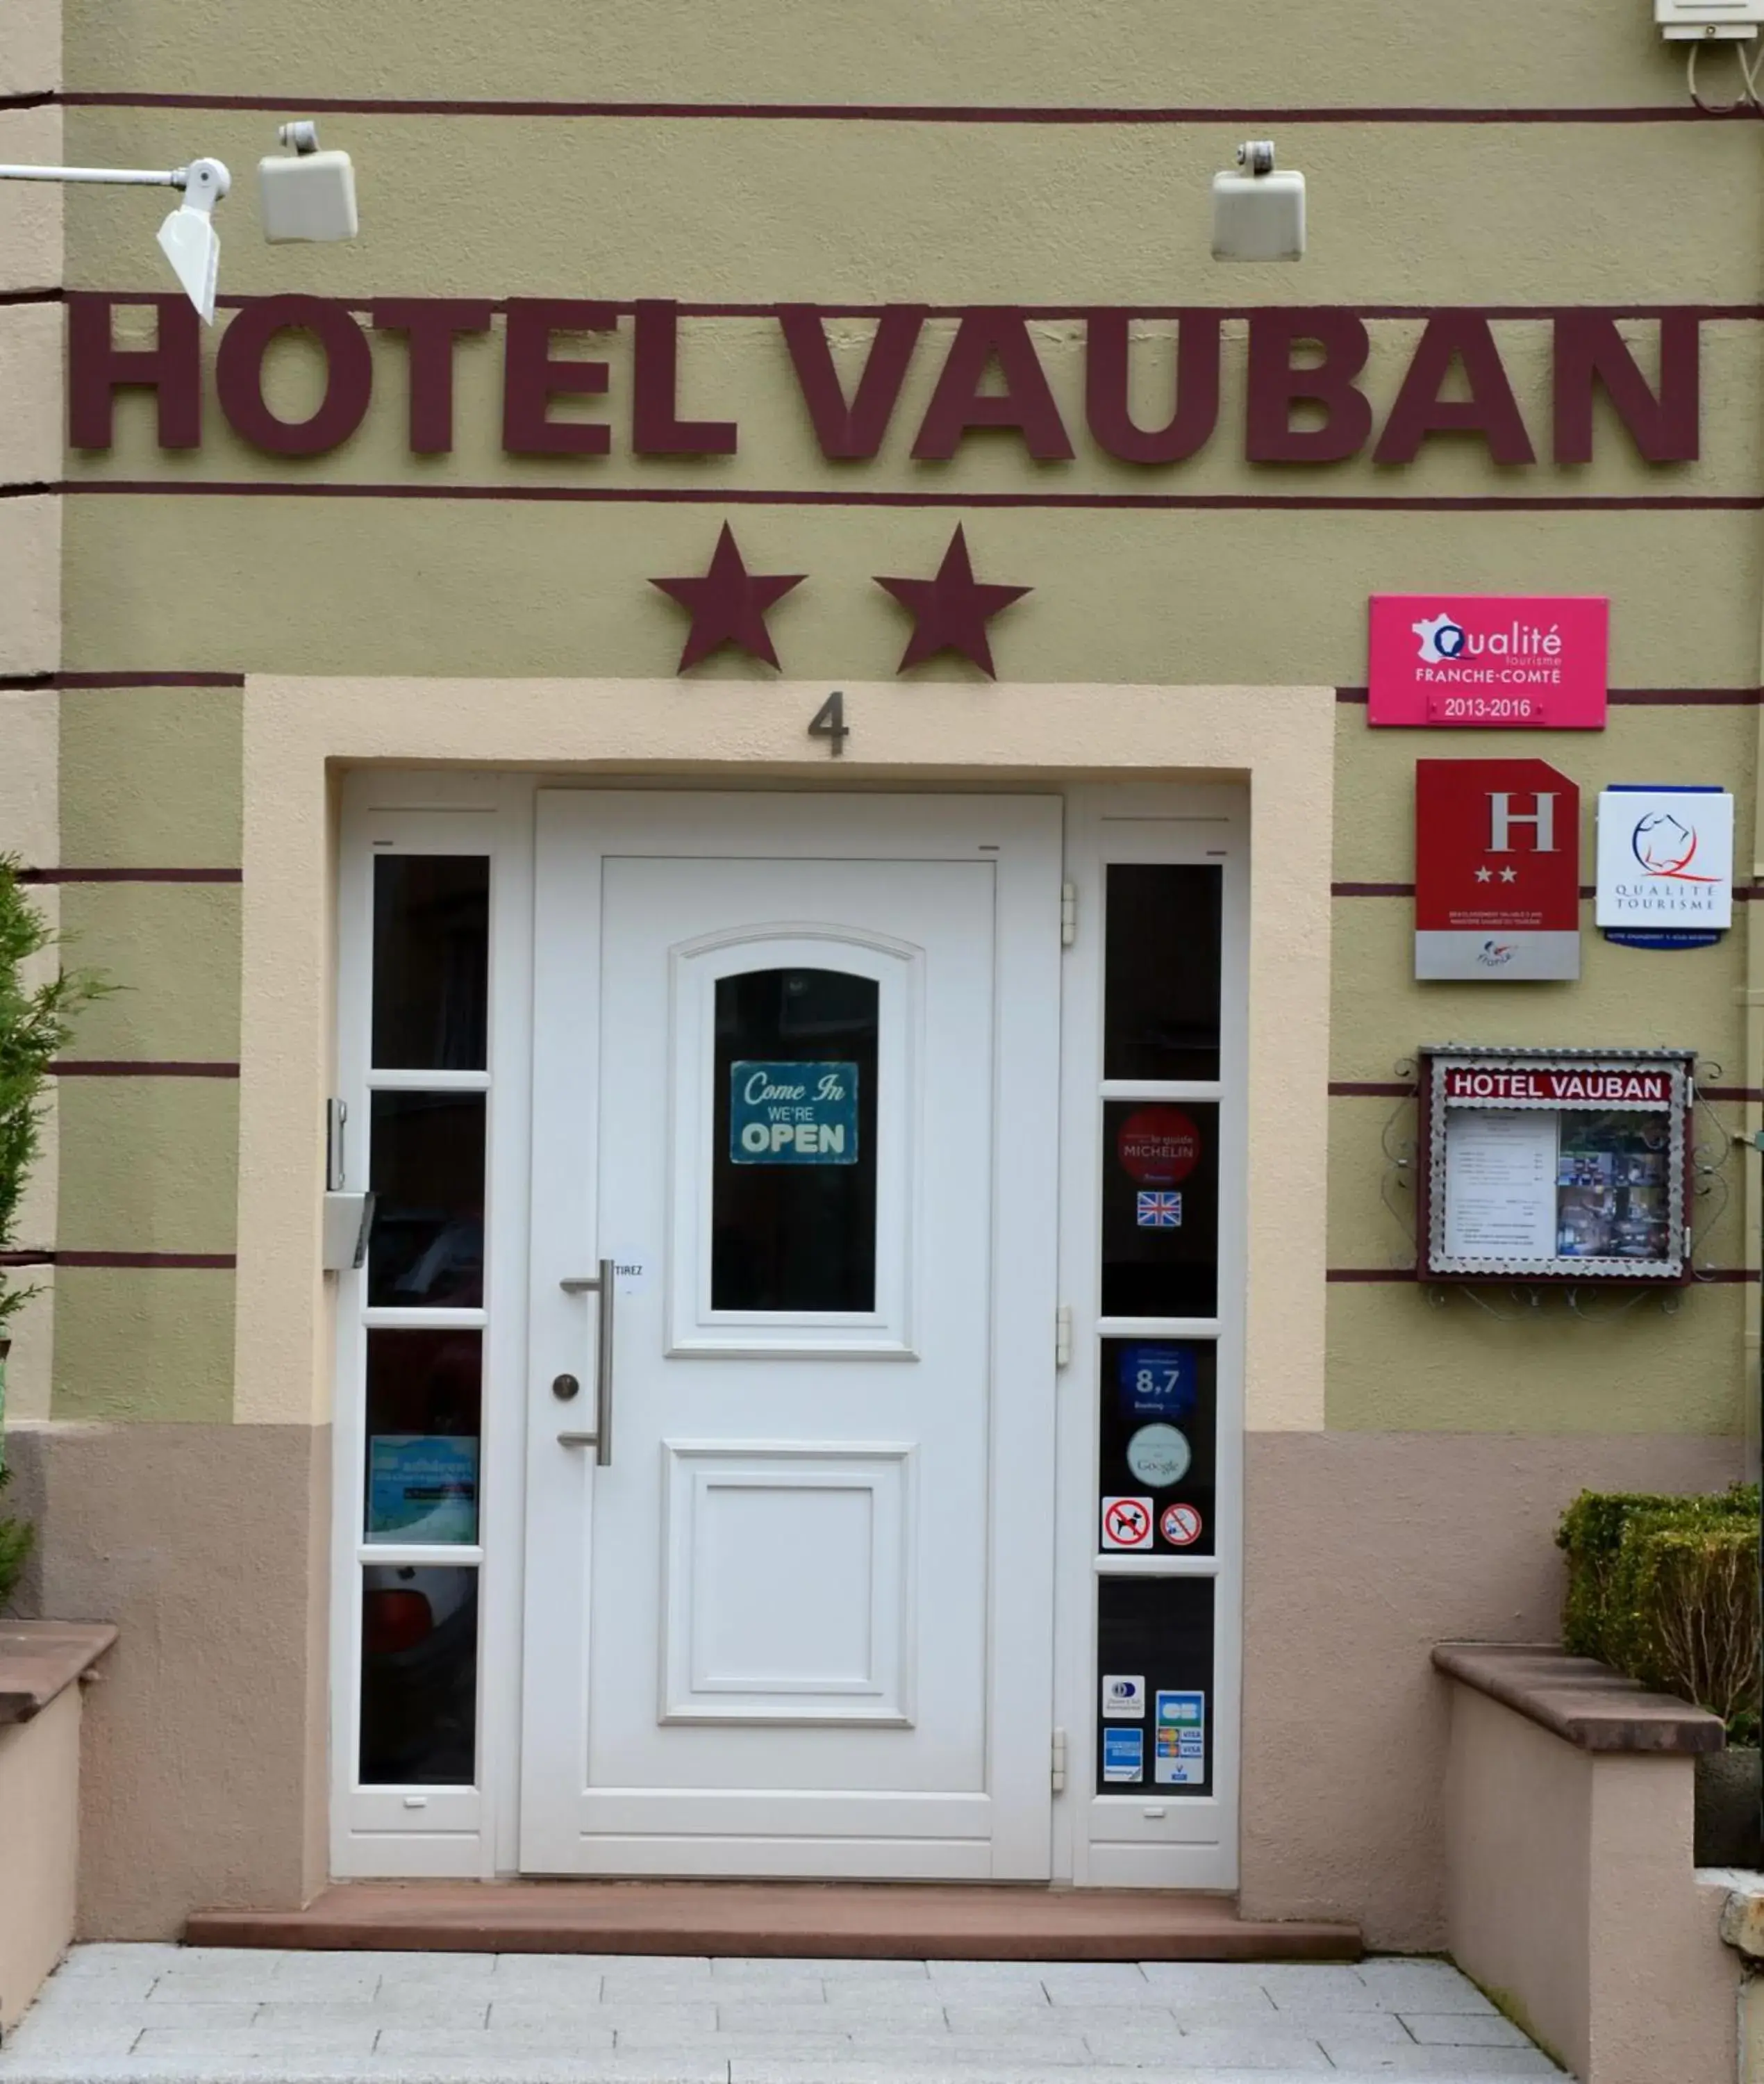 Facade/entrance in Hotel Vauban